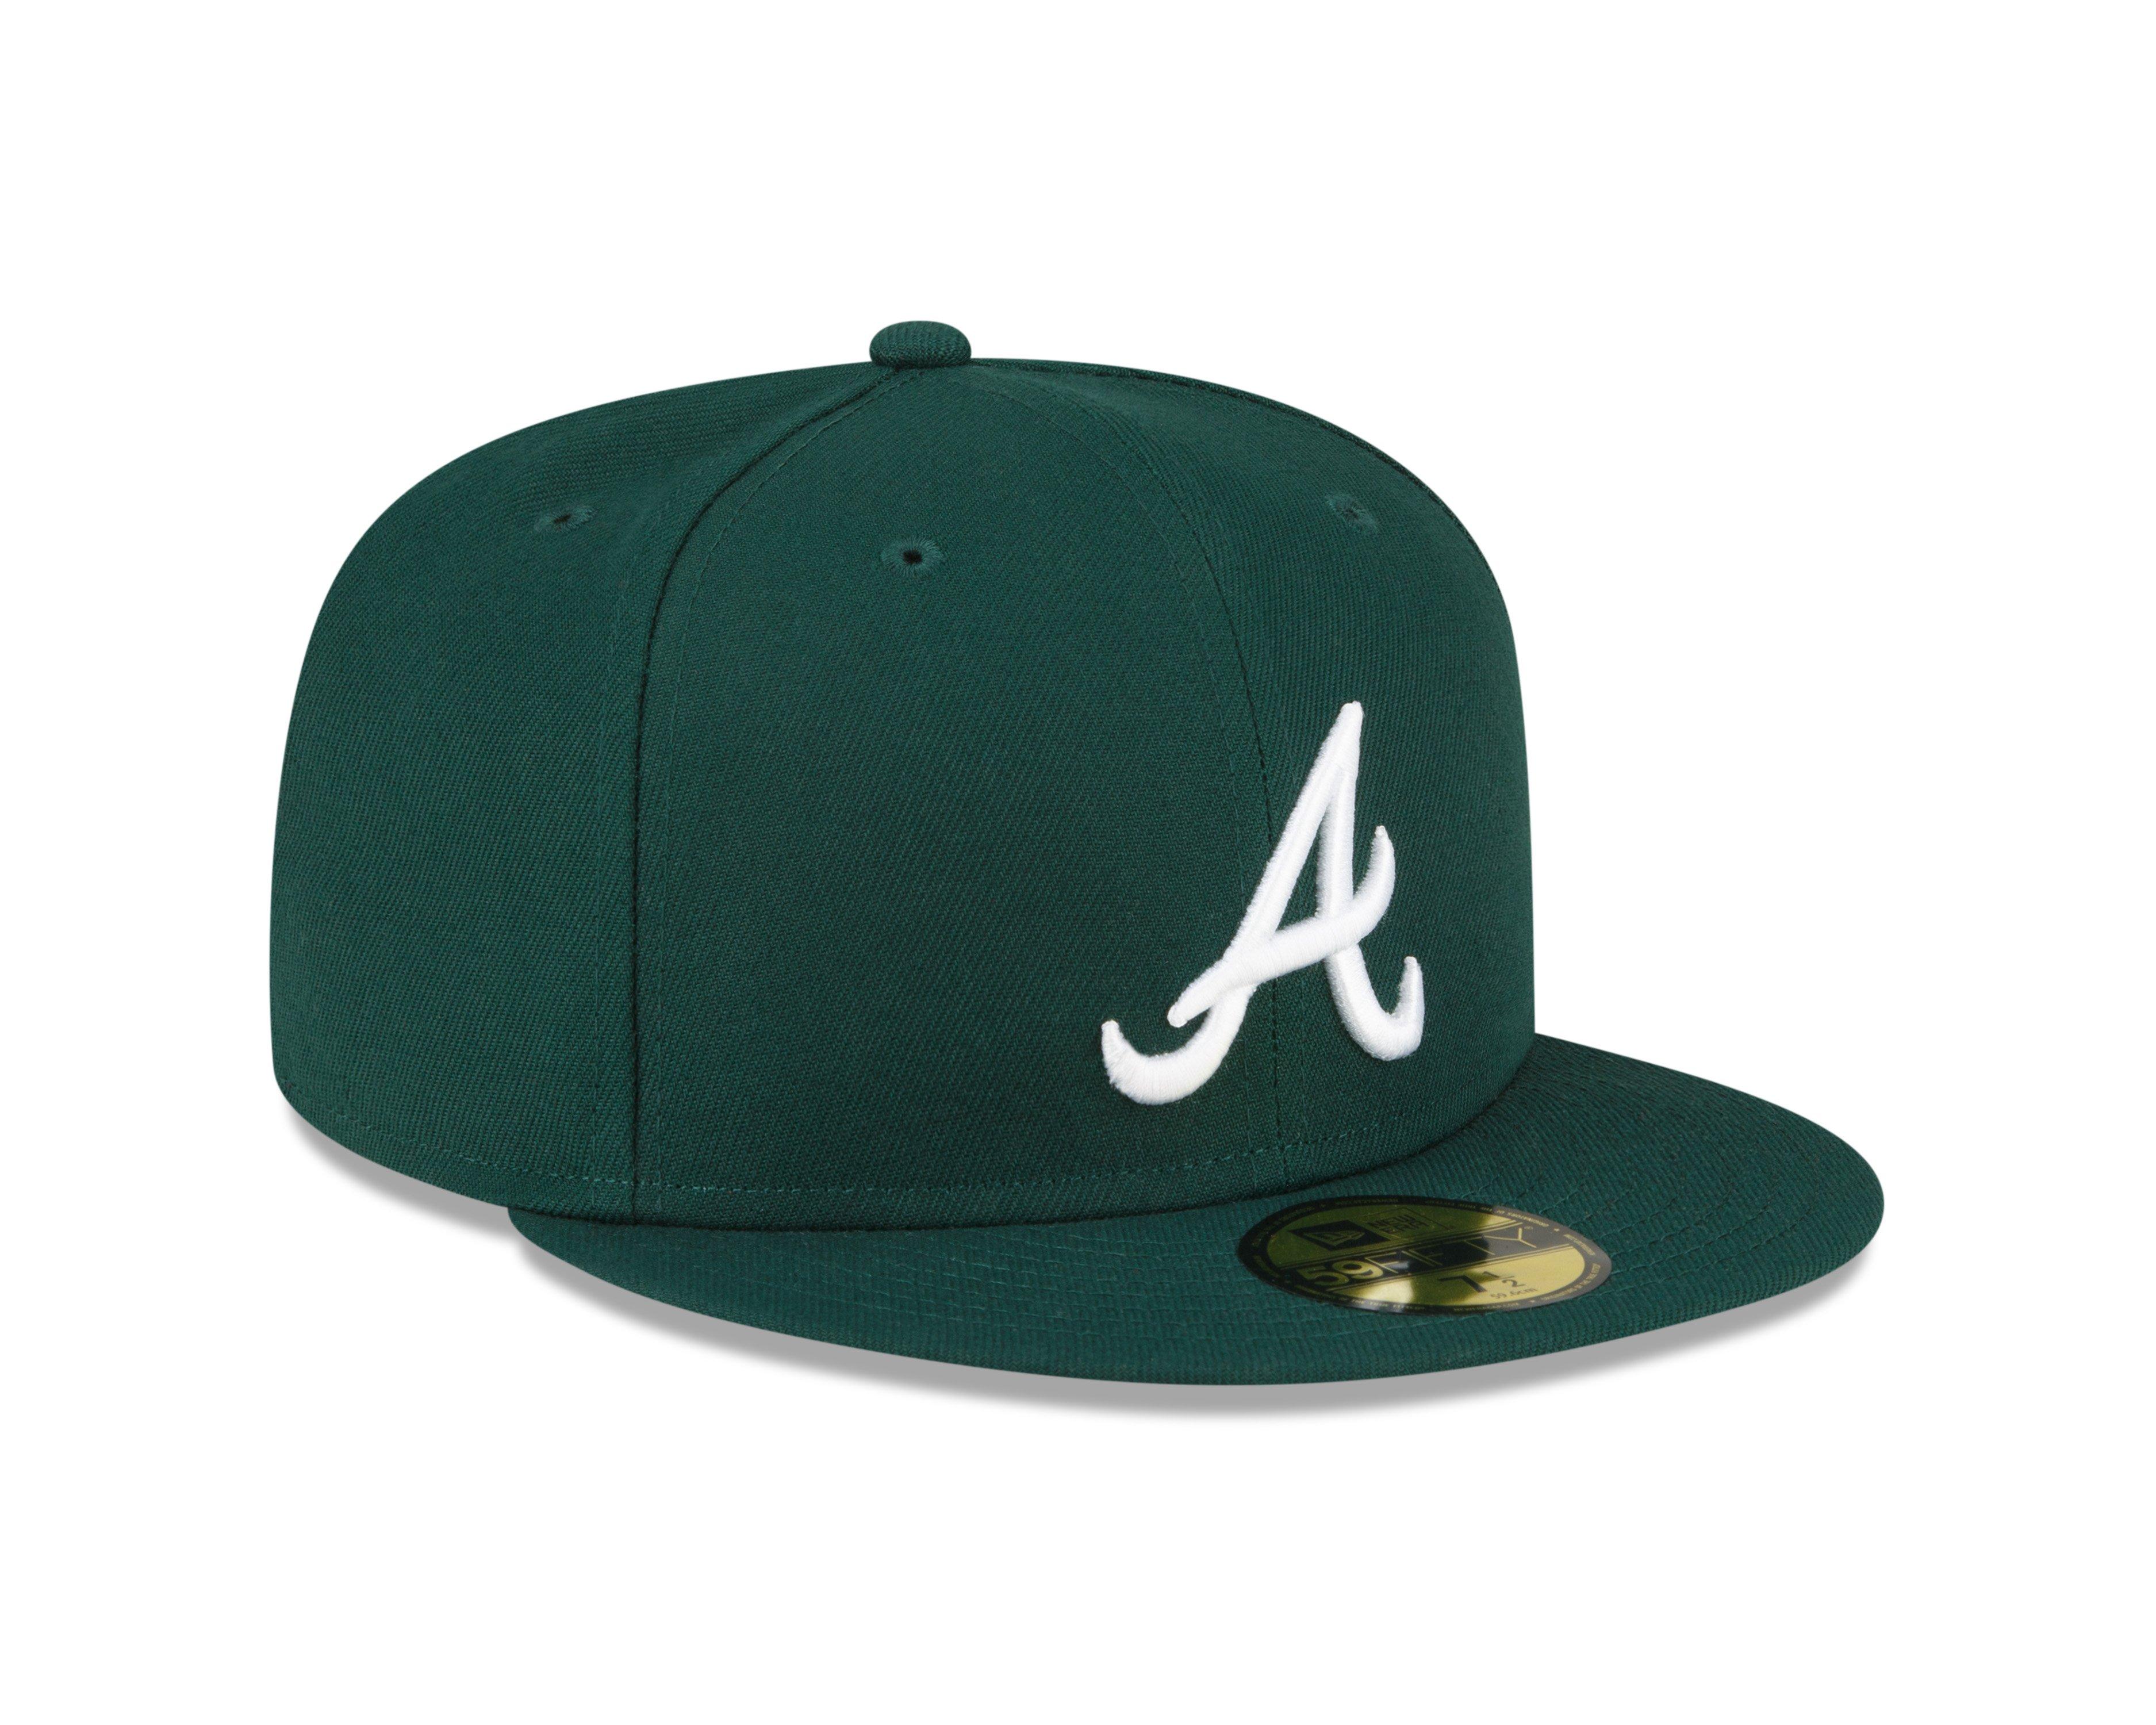 Braves' new cap for spring 2014